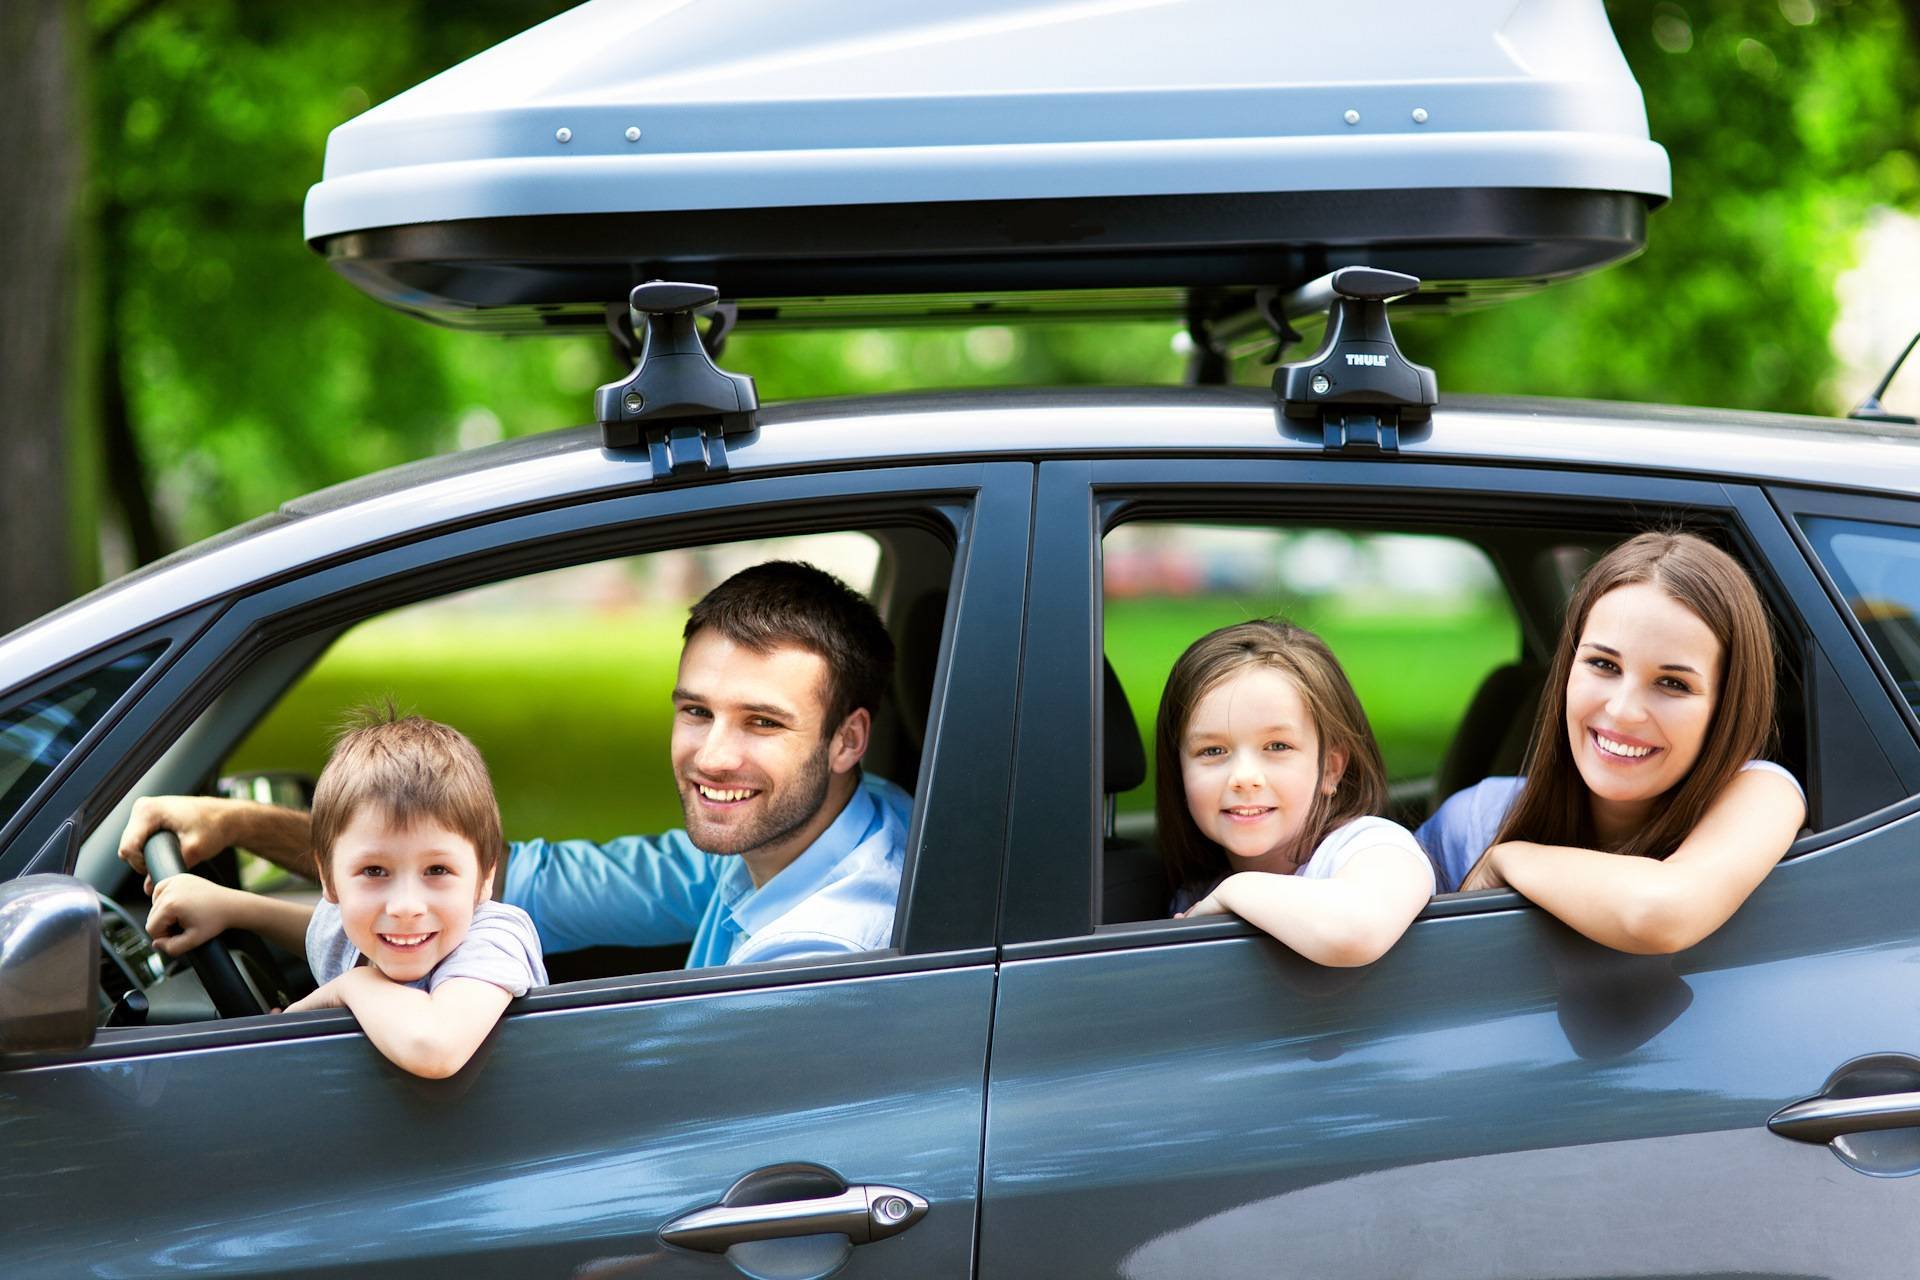 Первая машина в семье. Семейная машина. Семья с автомобилем. Машина для путешествий семьей. Путешествие с семьей.